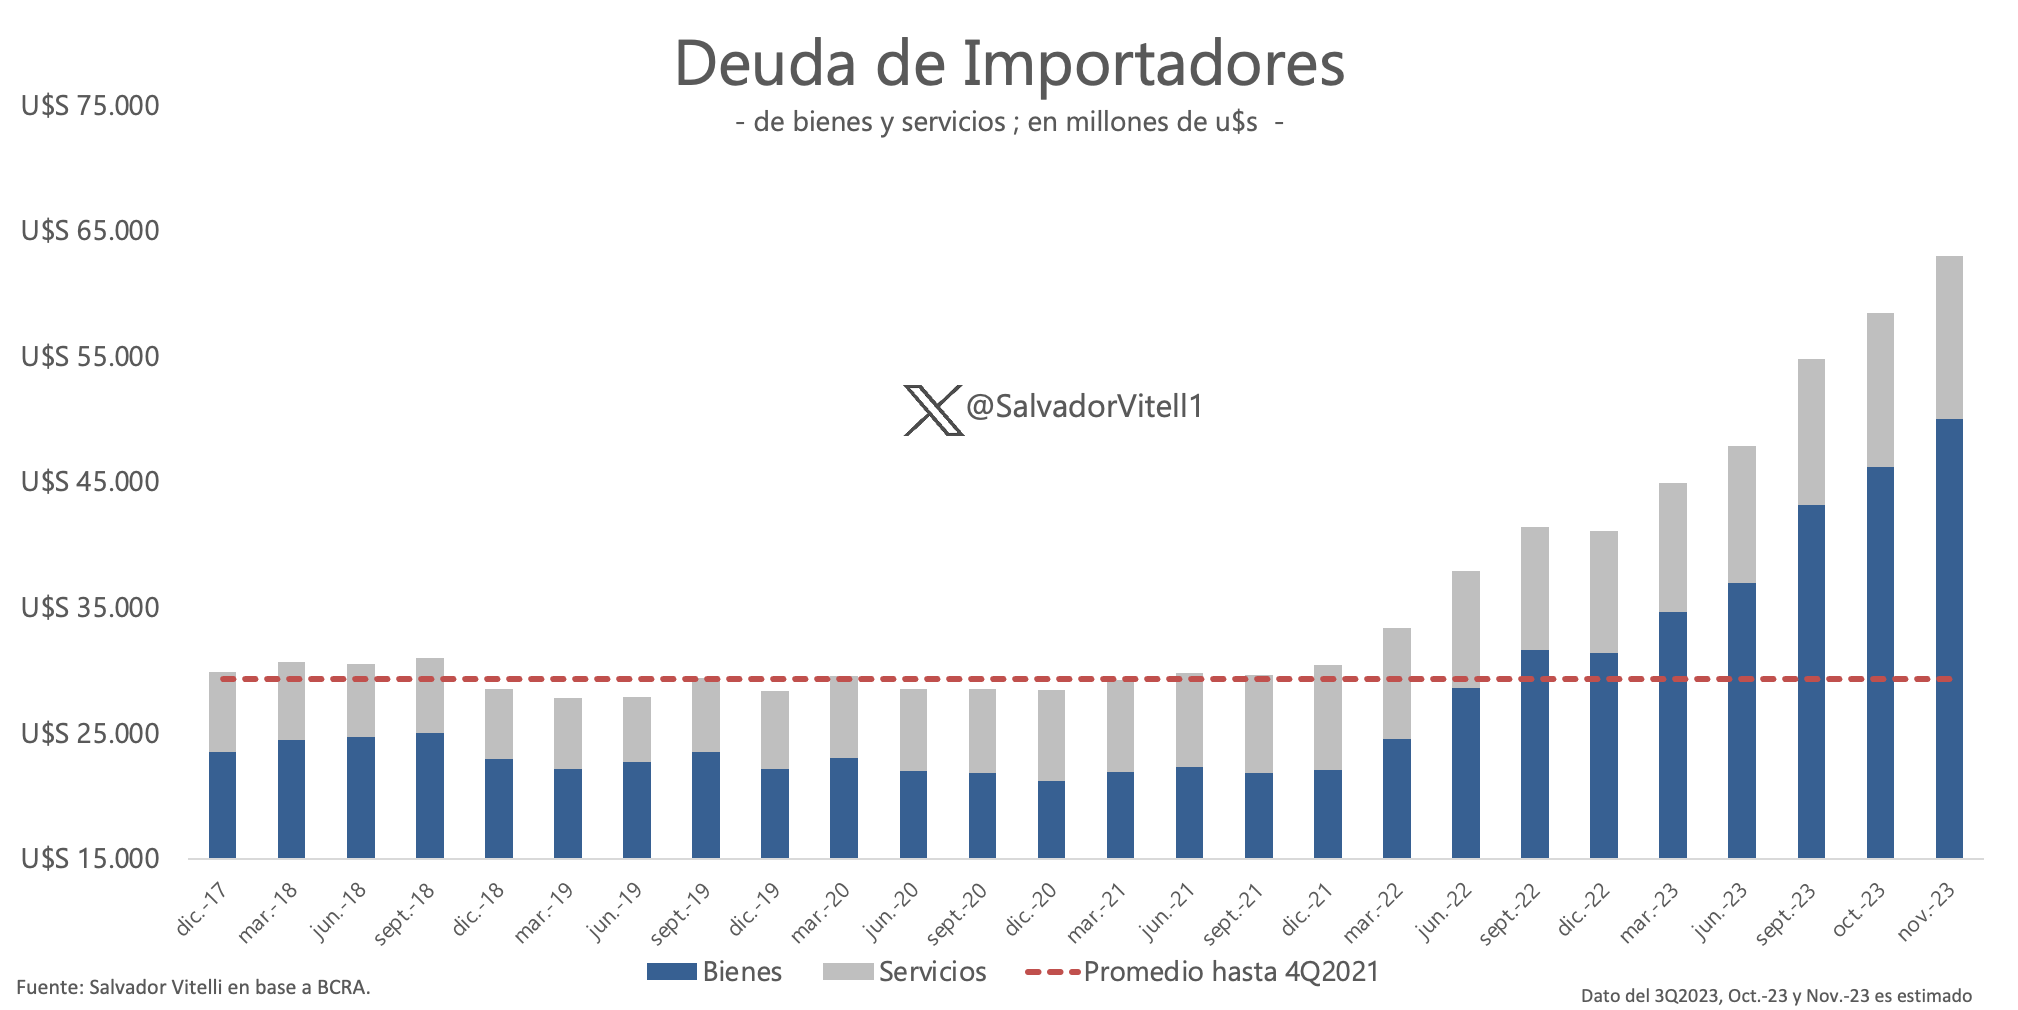 La deuda de importadores duplicó sus niveles usuales en los últimos años.